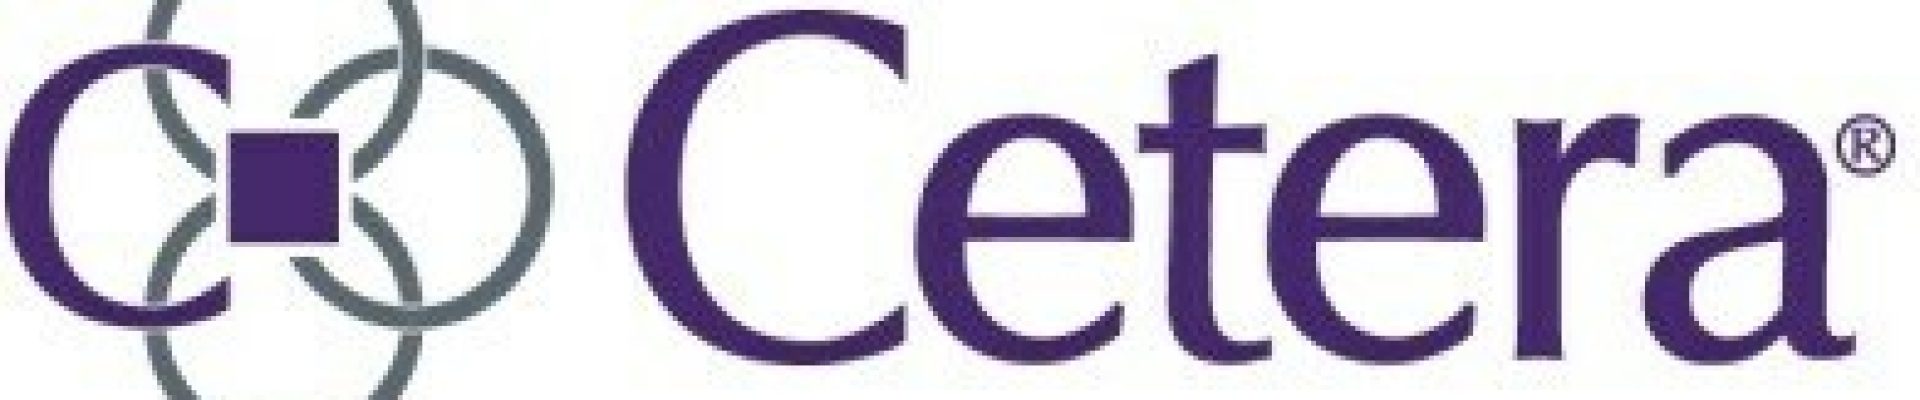 Cetera_Logo_Logo.jpg